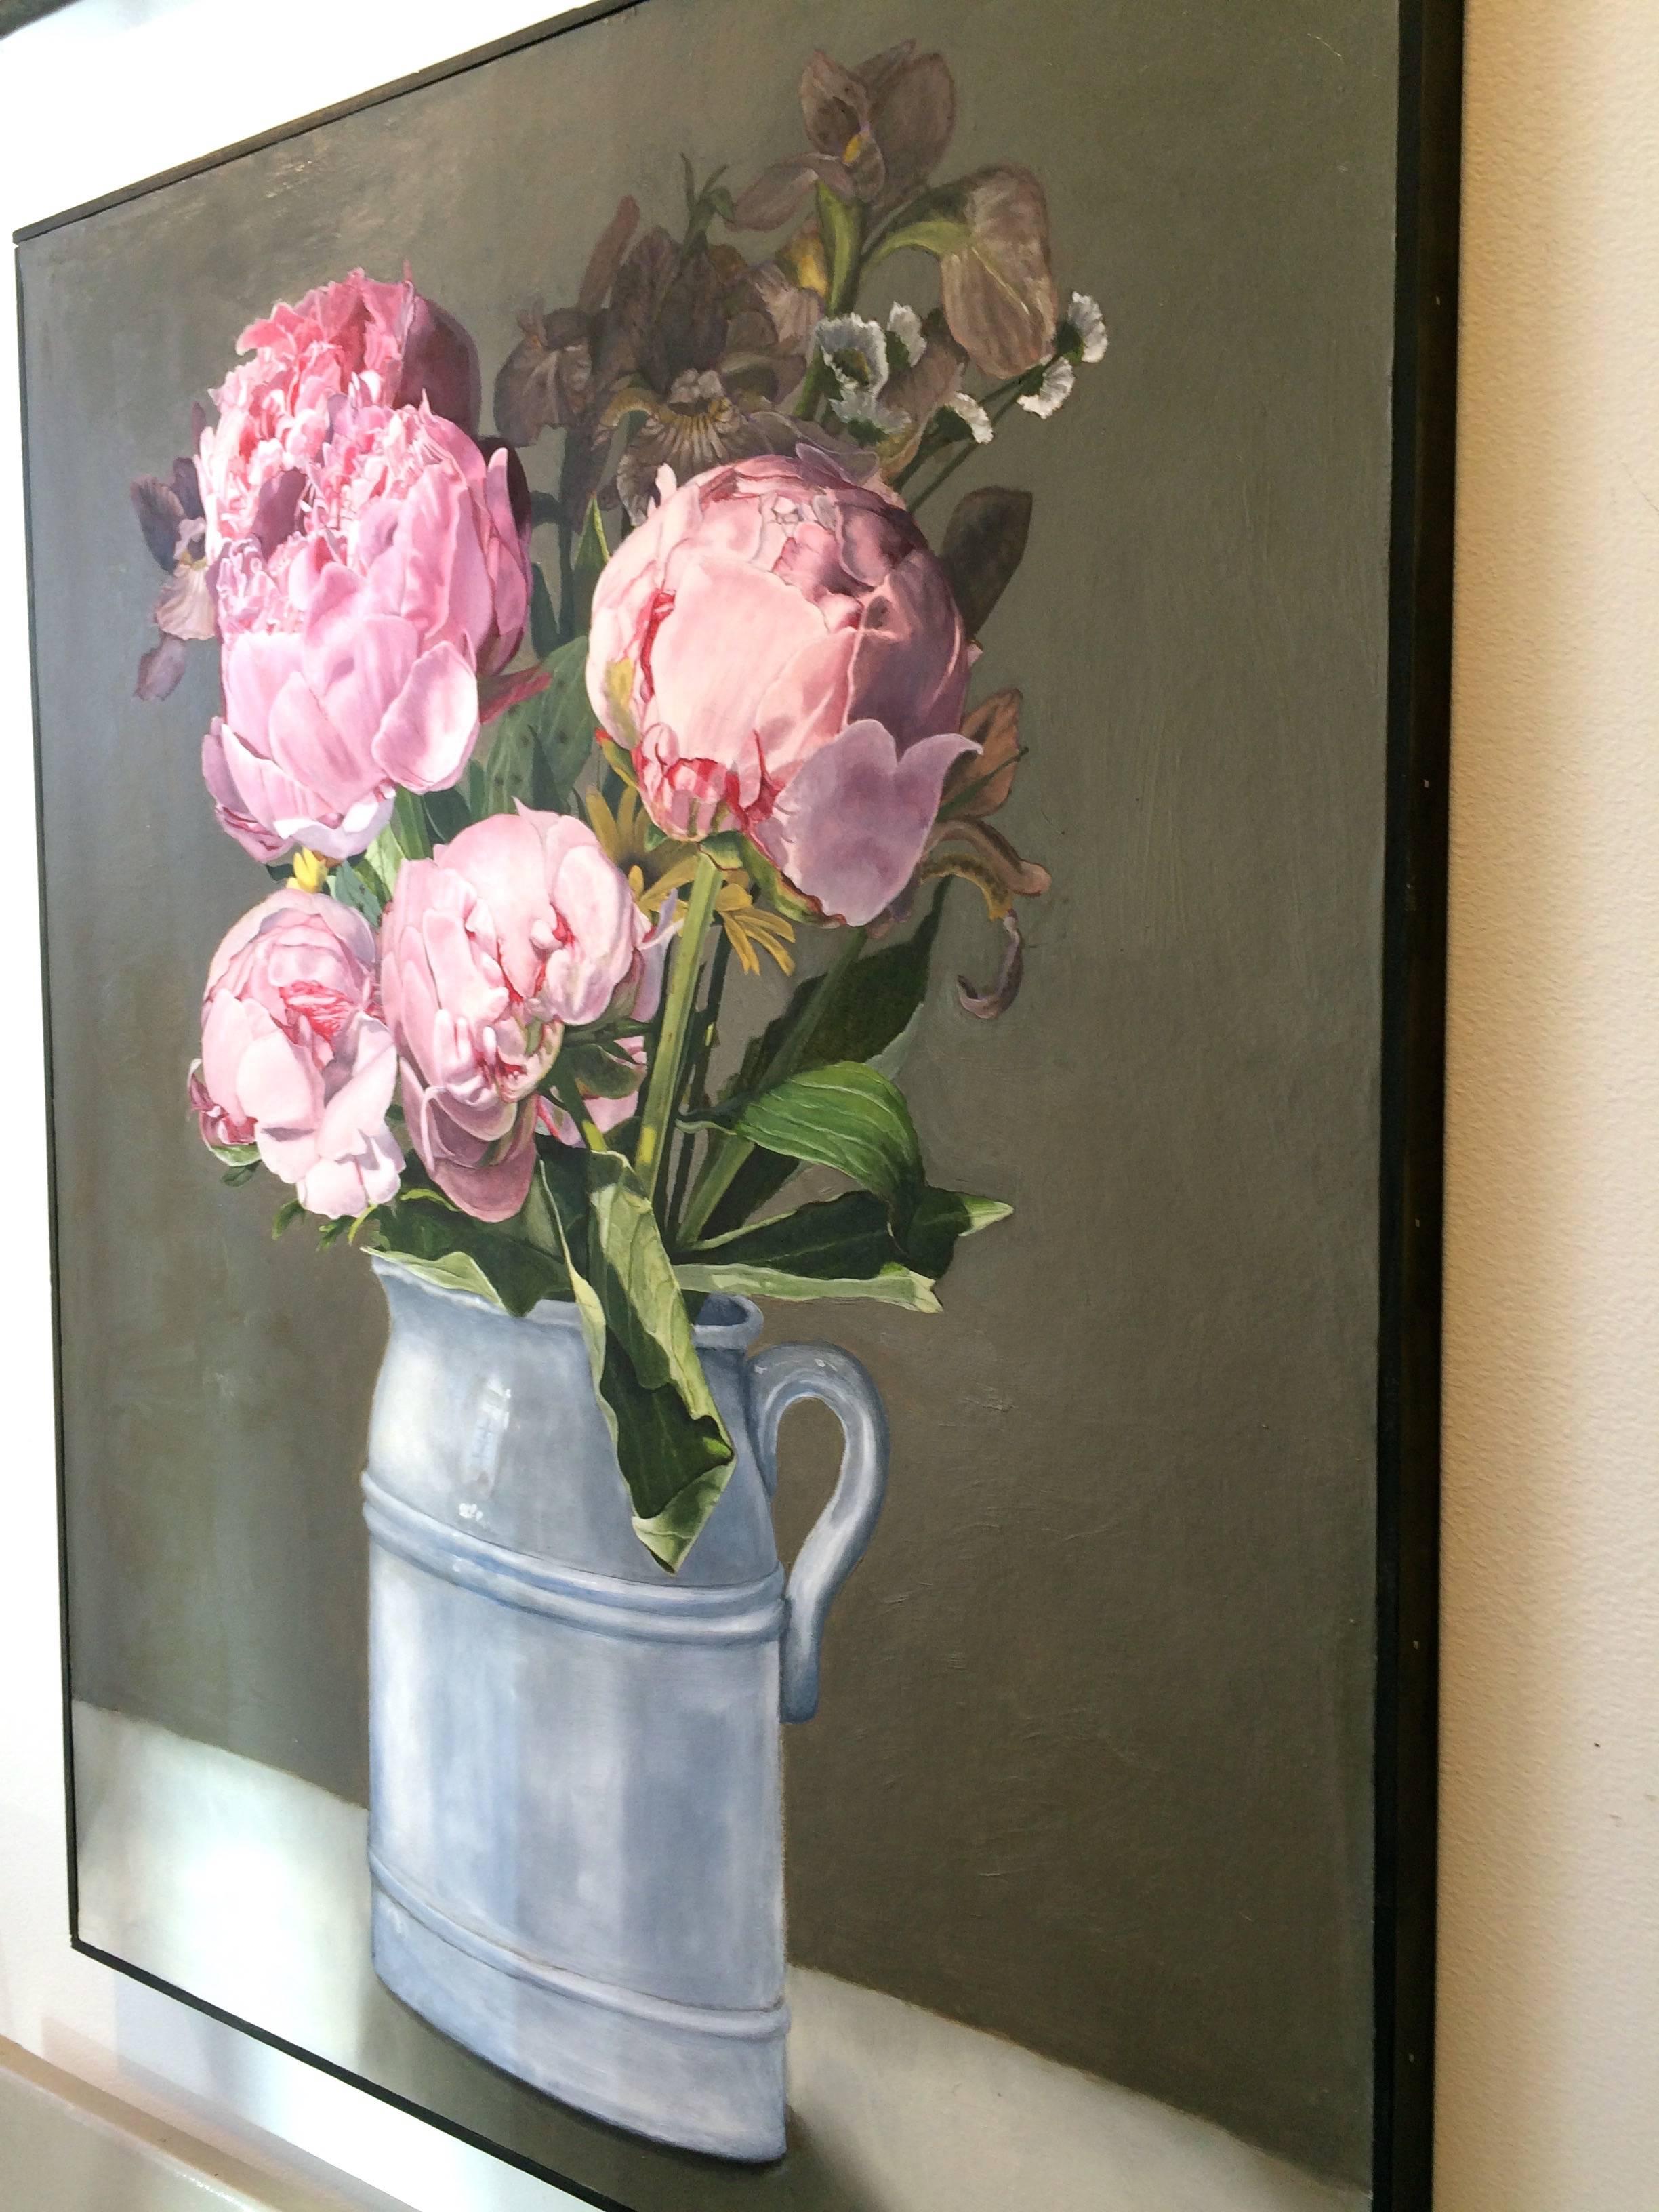 Rosa Pfingstrosen, vom Künstler signiert.
Peggi Blizard ist eine amerikanische Künstlerin, die vor allem für ihre meditativen realistischen Gemälde von Innenräumen und Stillleben bekannt ist. Indem er sich auf die Techniken des holländischen